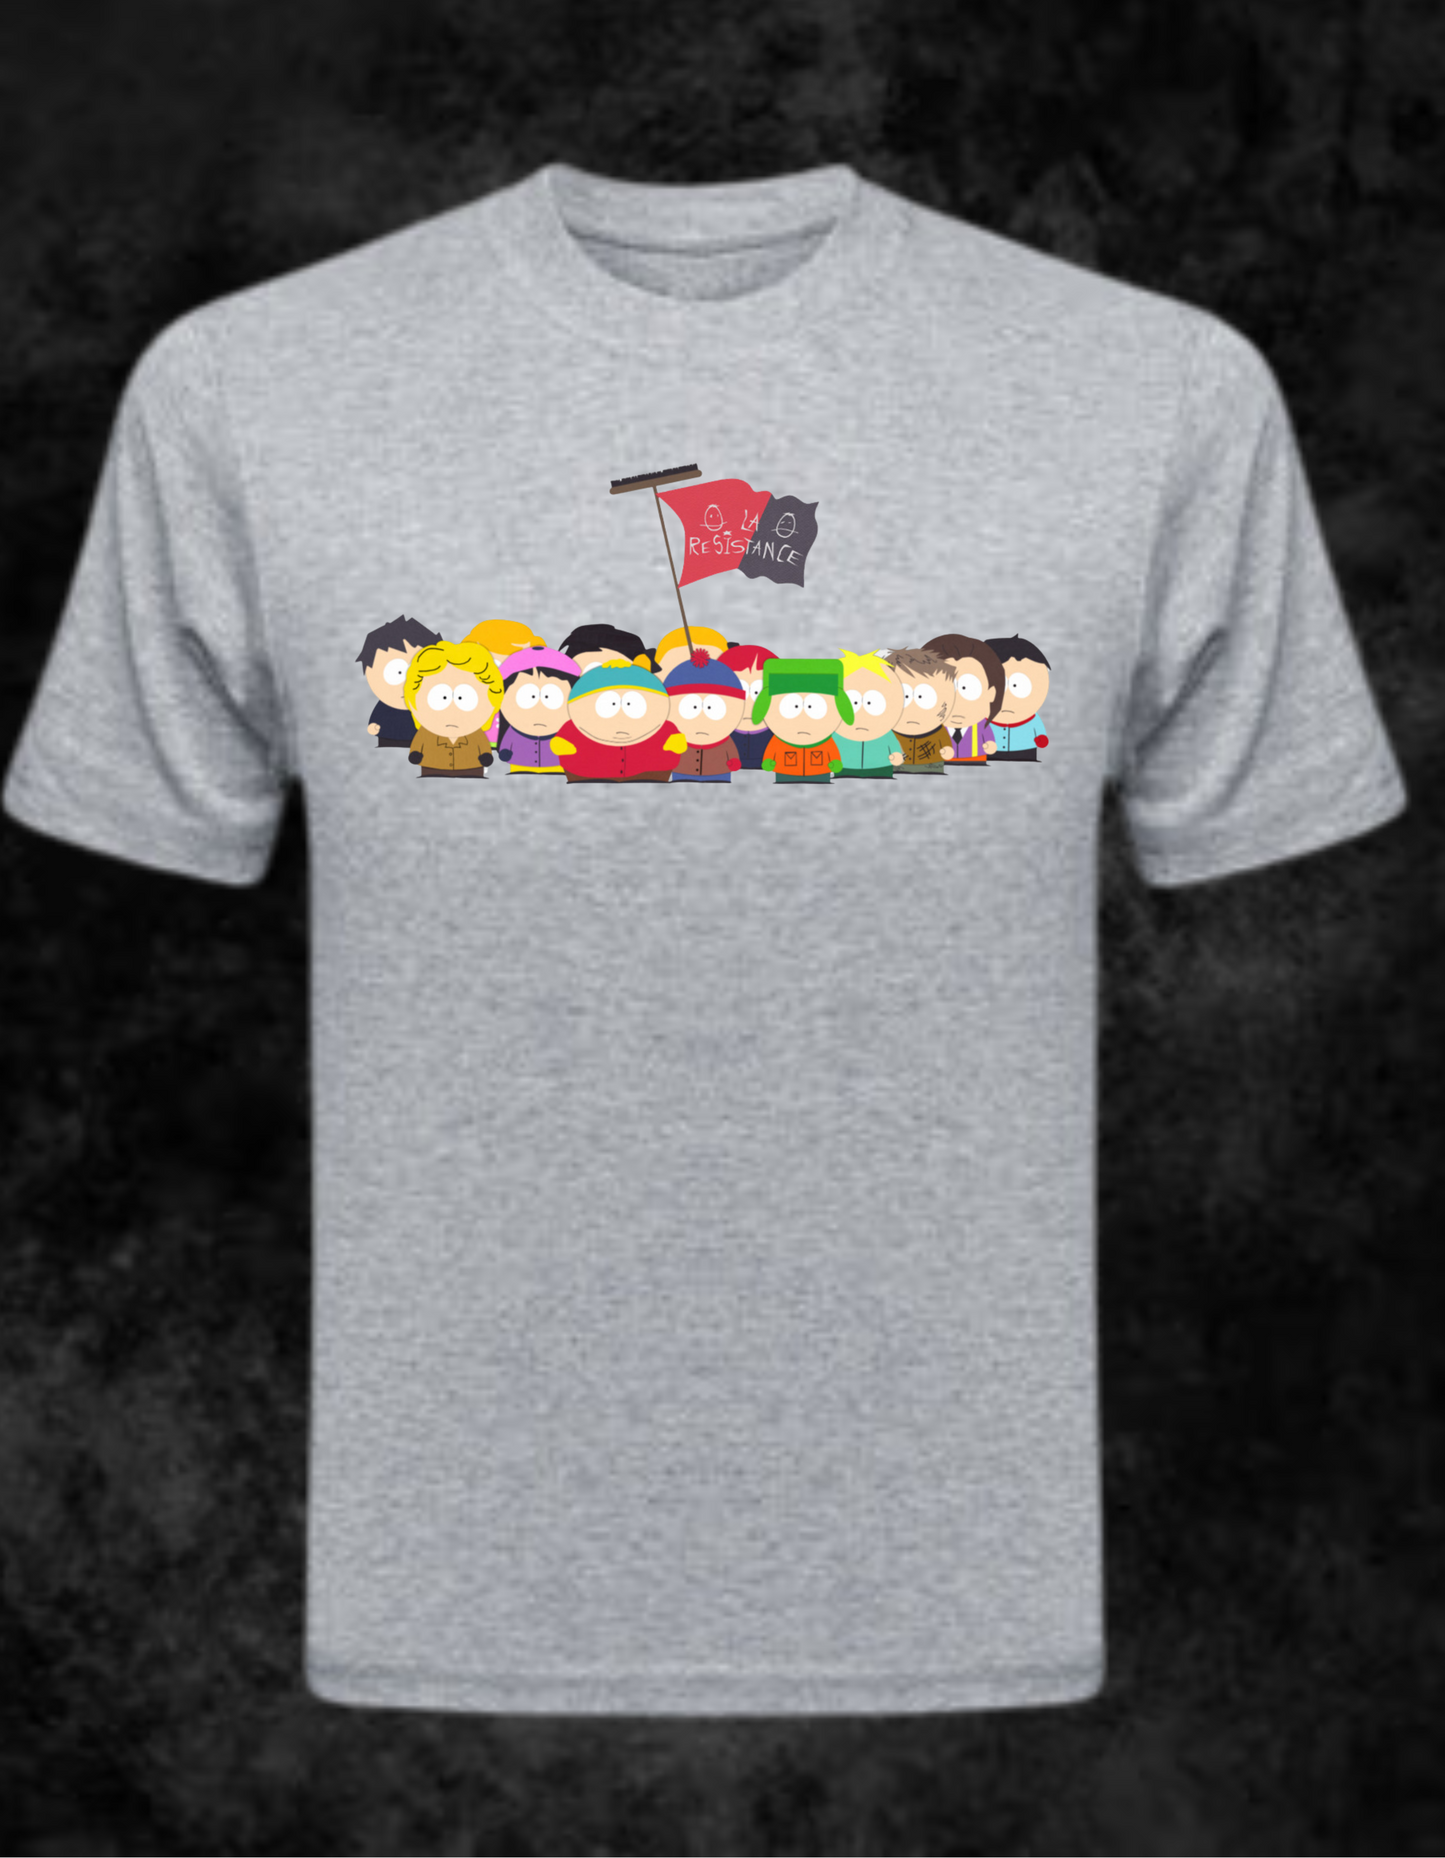 South Park "La Resistance" T-Shirt